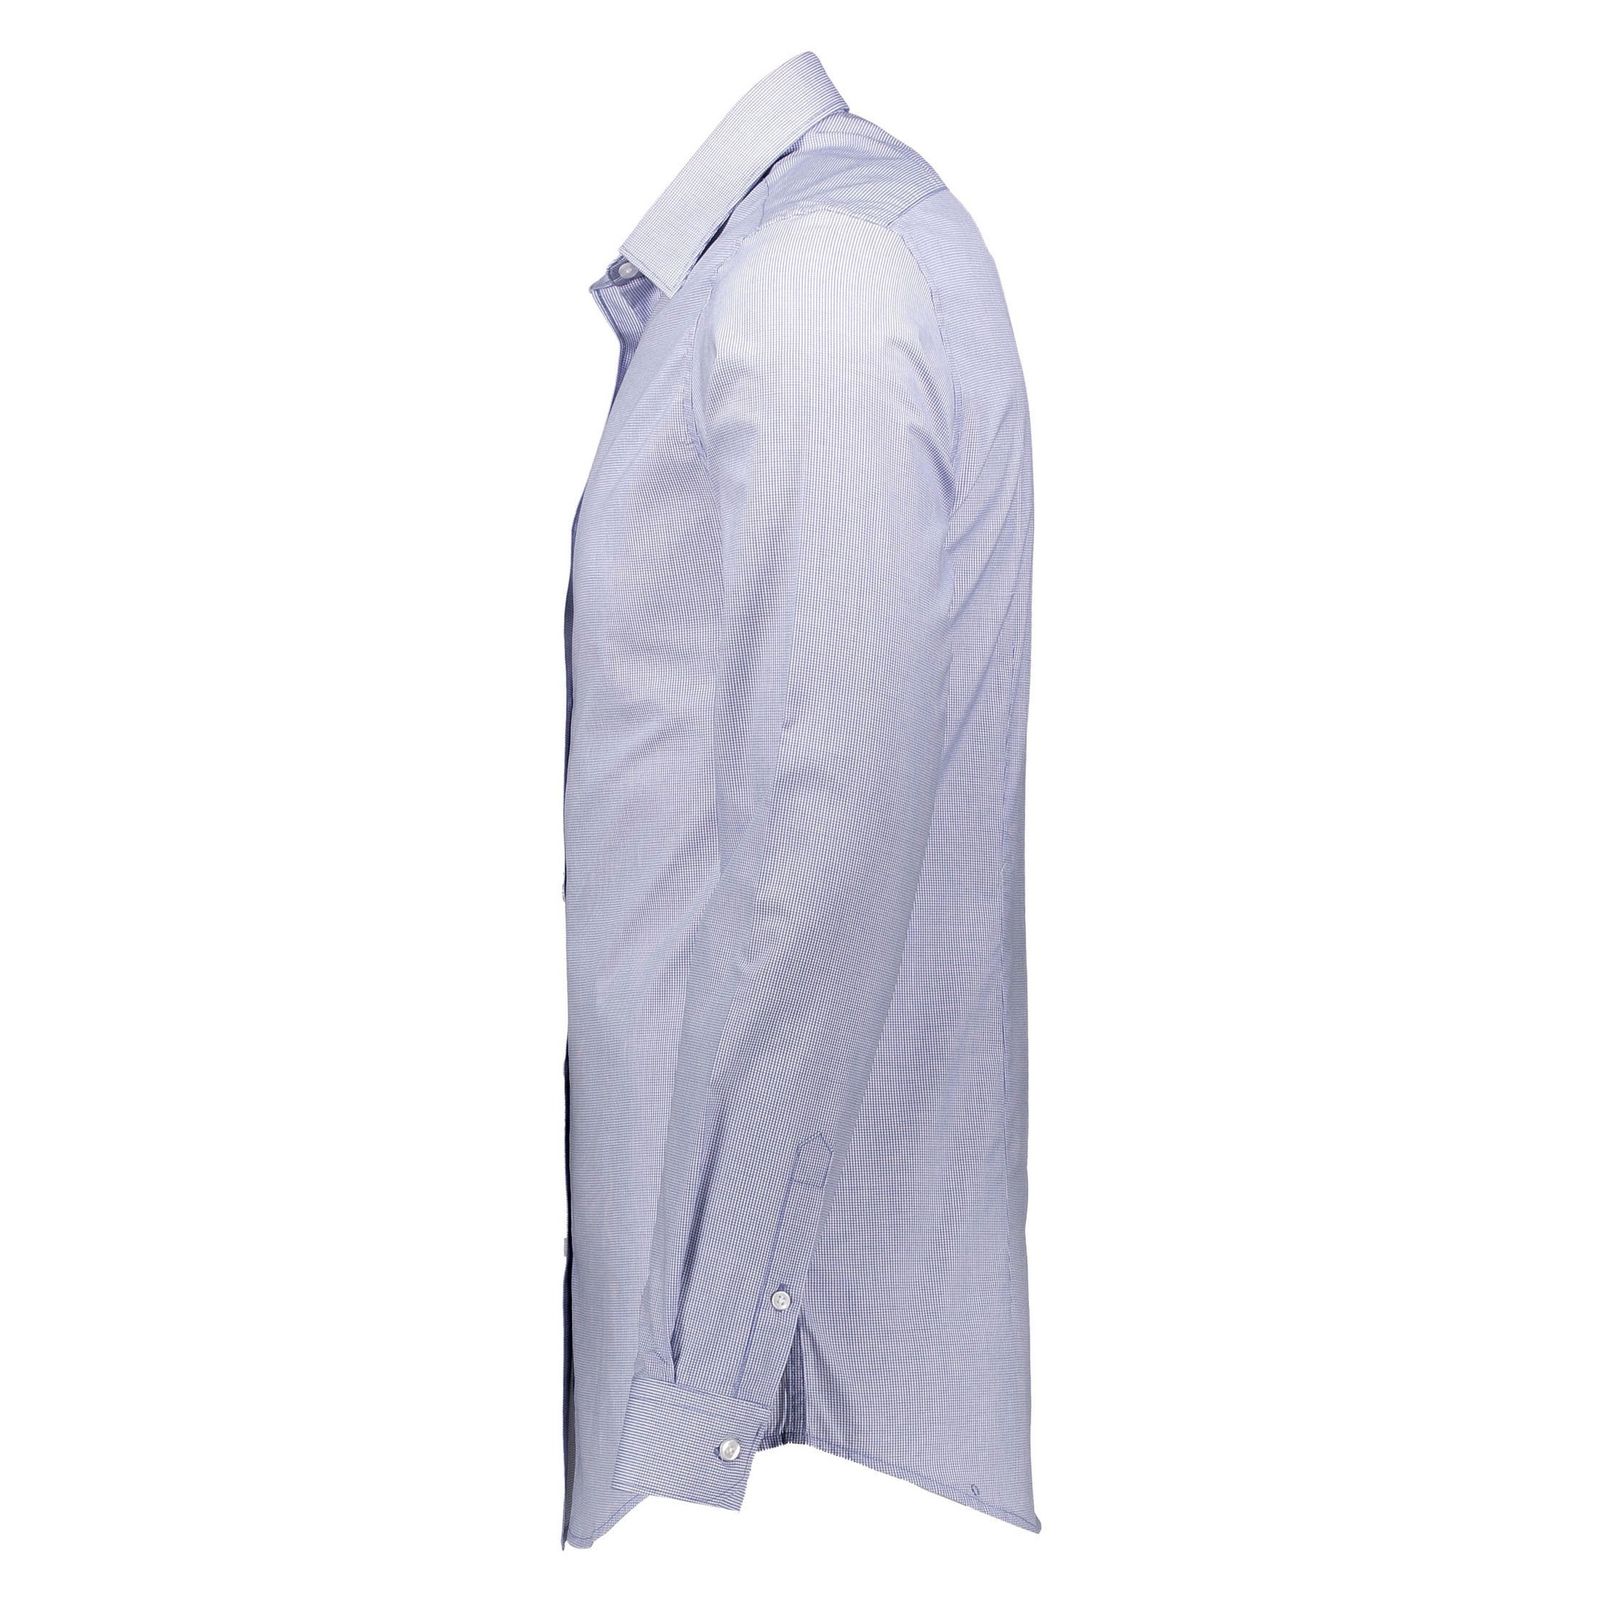 پیراهن رسمی مردانه - رد هرینگ - آبي روشن - 4